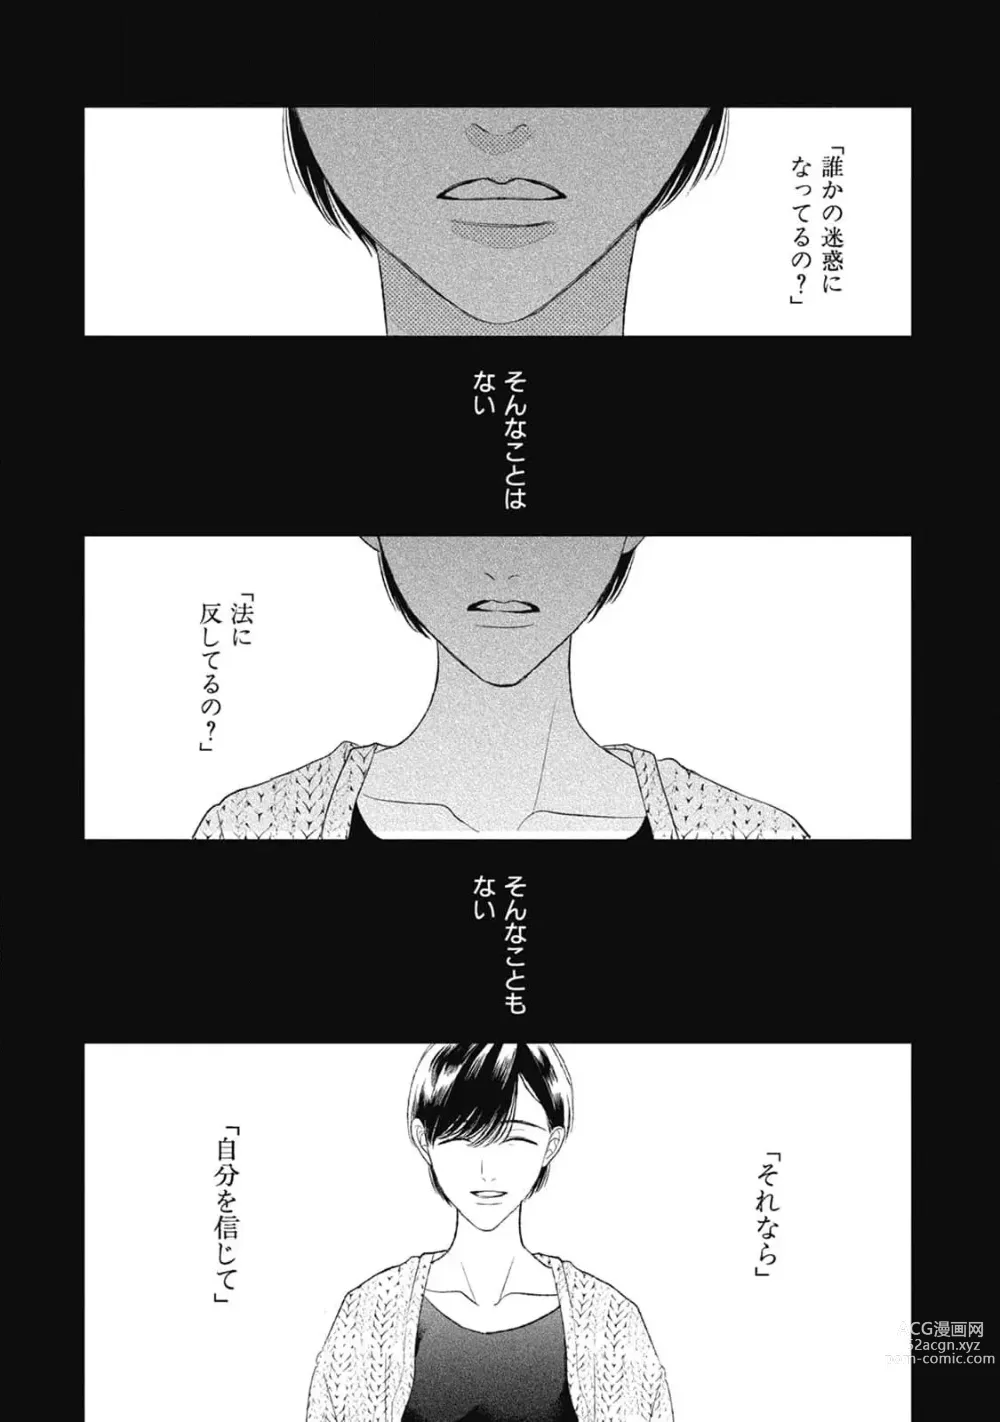 Page 34 of manga Bokura no Shuumatsu